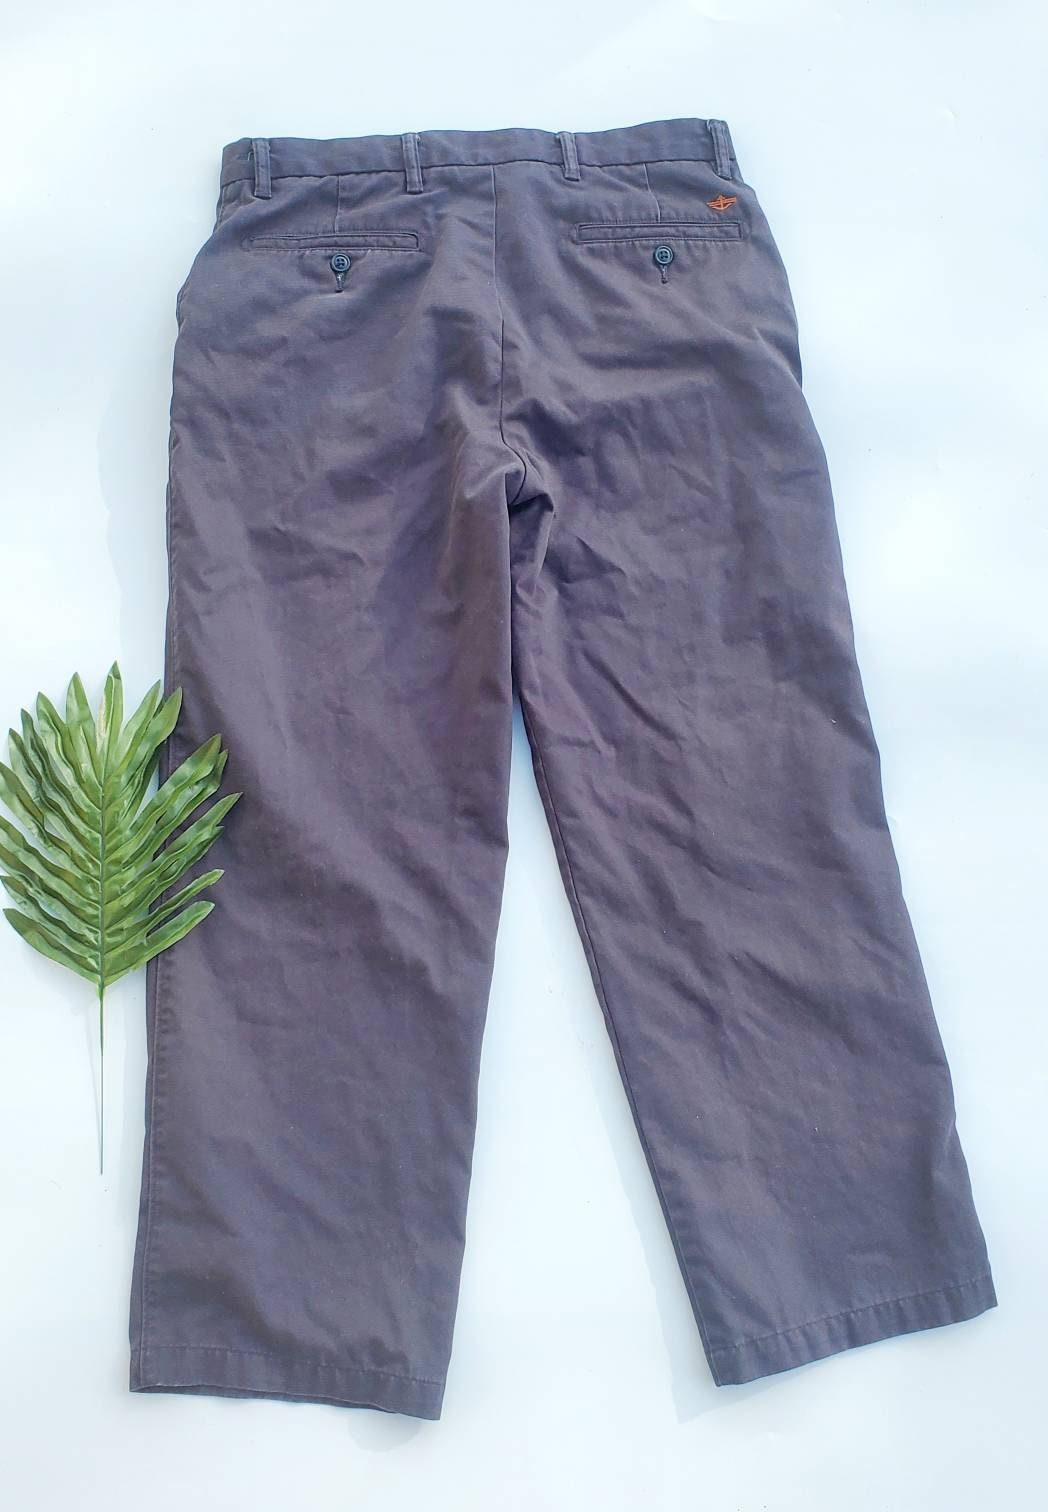 Blue Work Pants Men Vintage 80s Military Chore Pants Trousers Men